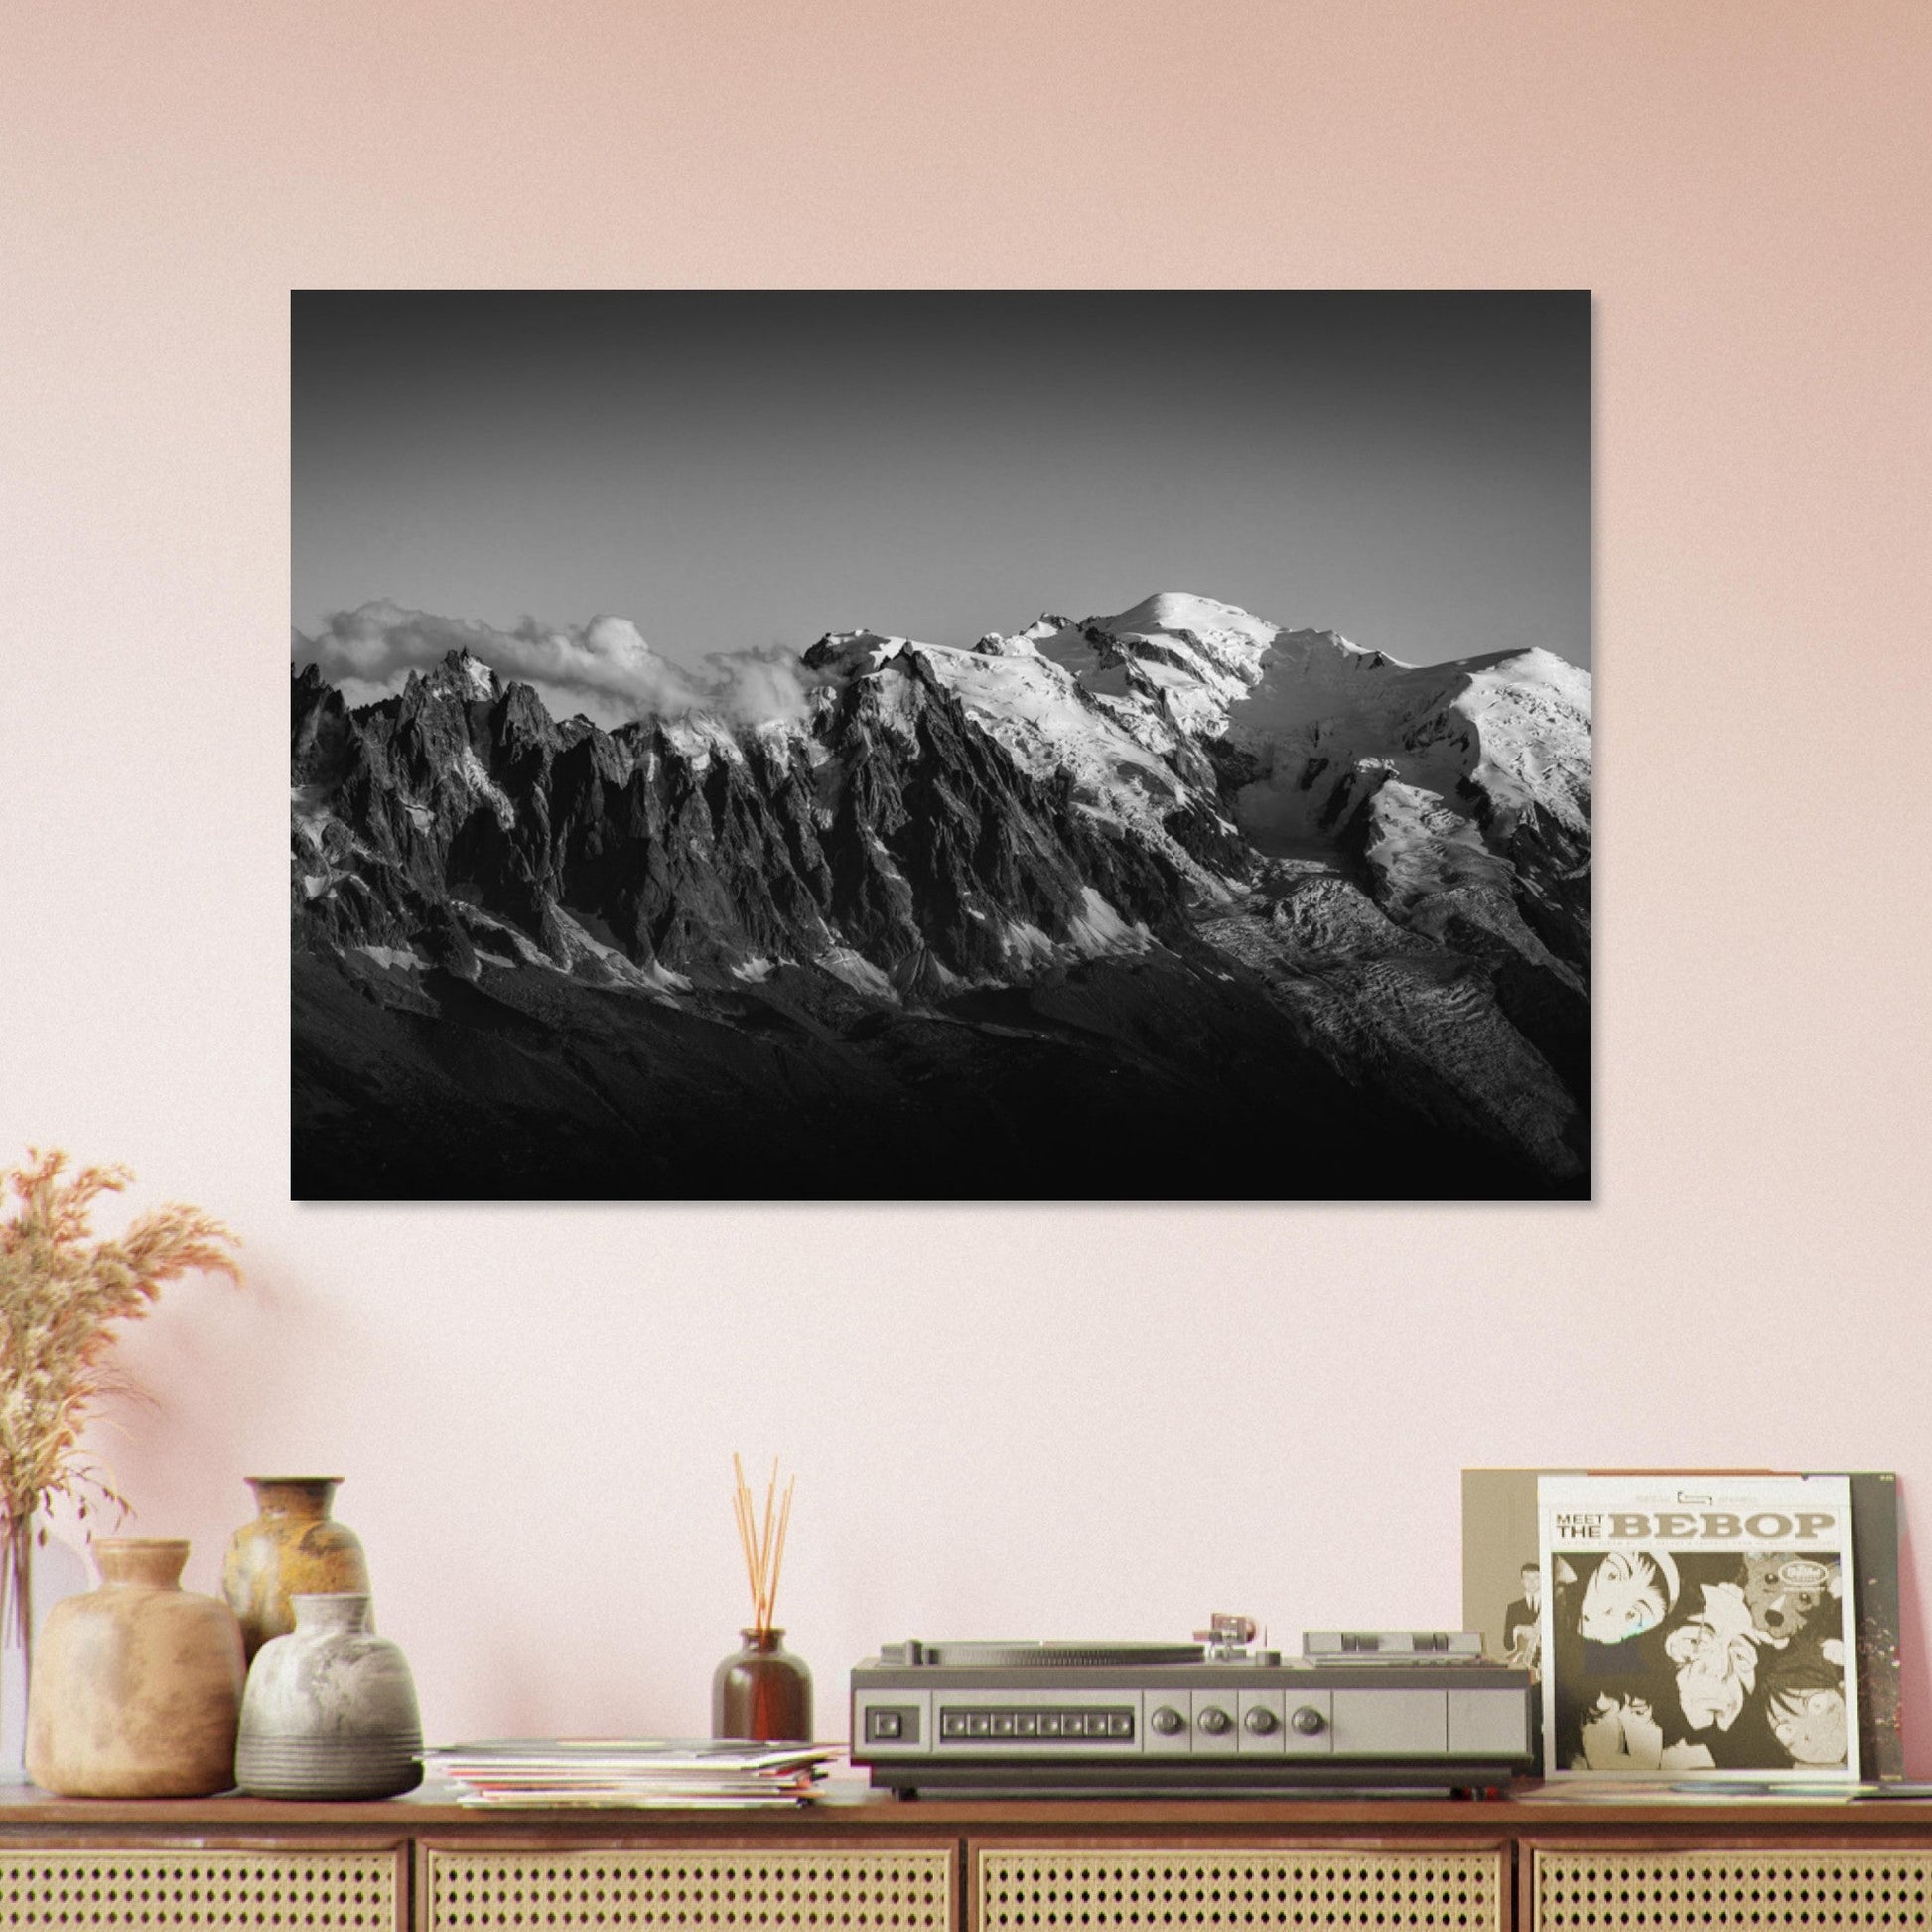 Vente Photo du Mont-Blanc et de ses aiguilles - Noir & Blanc - Tableau photo alu montagne